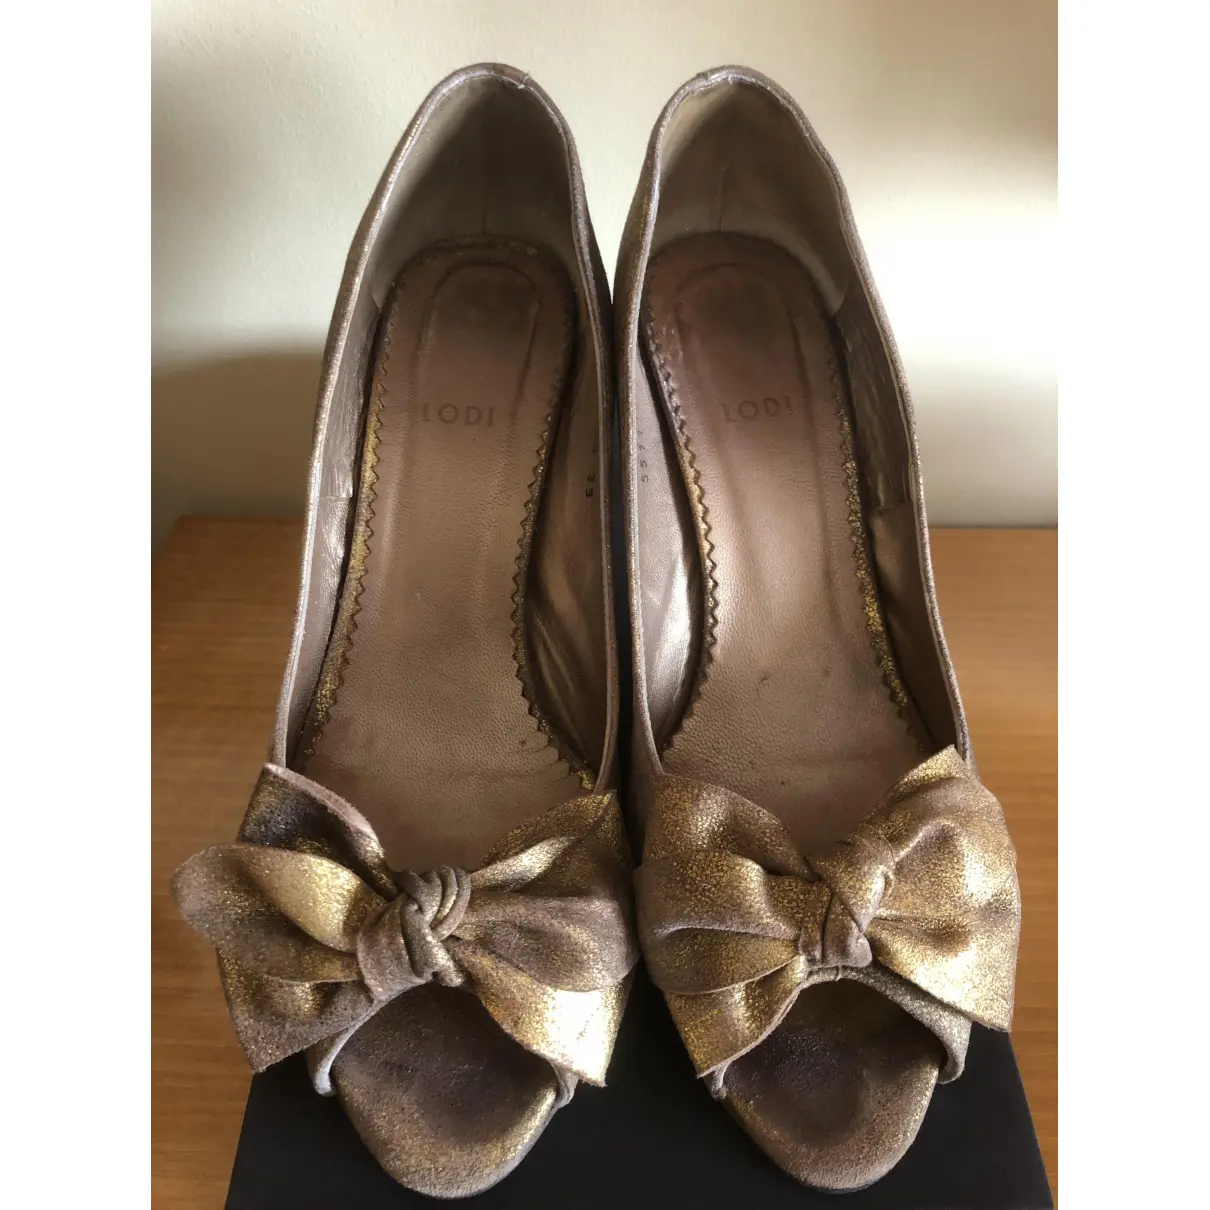 Buy Lodi Glitter heels online